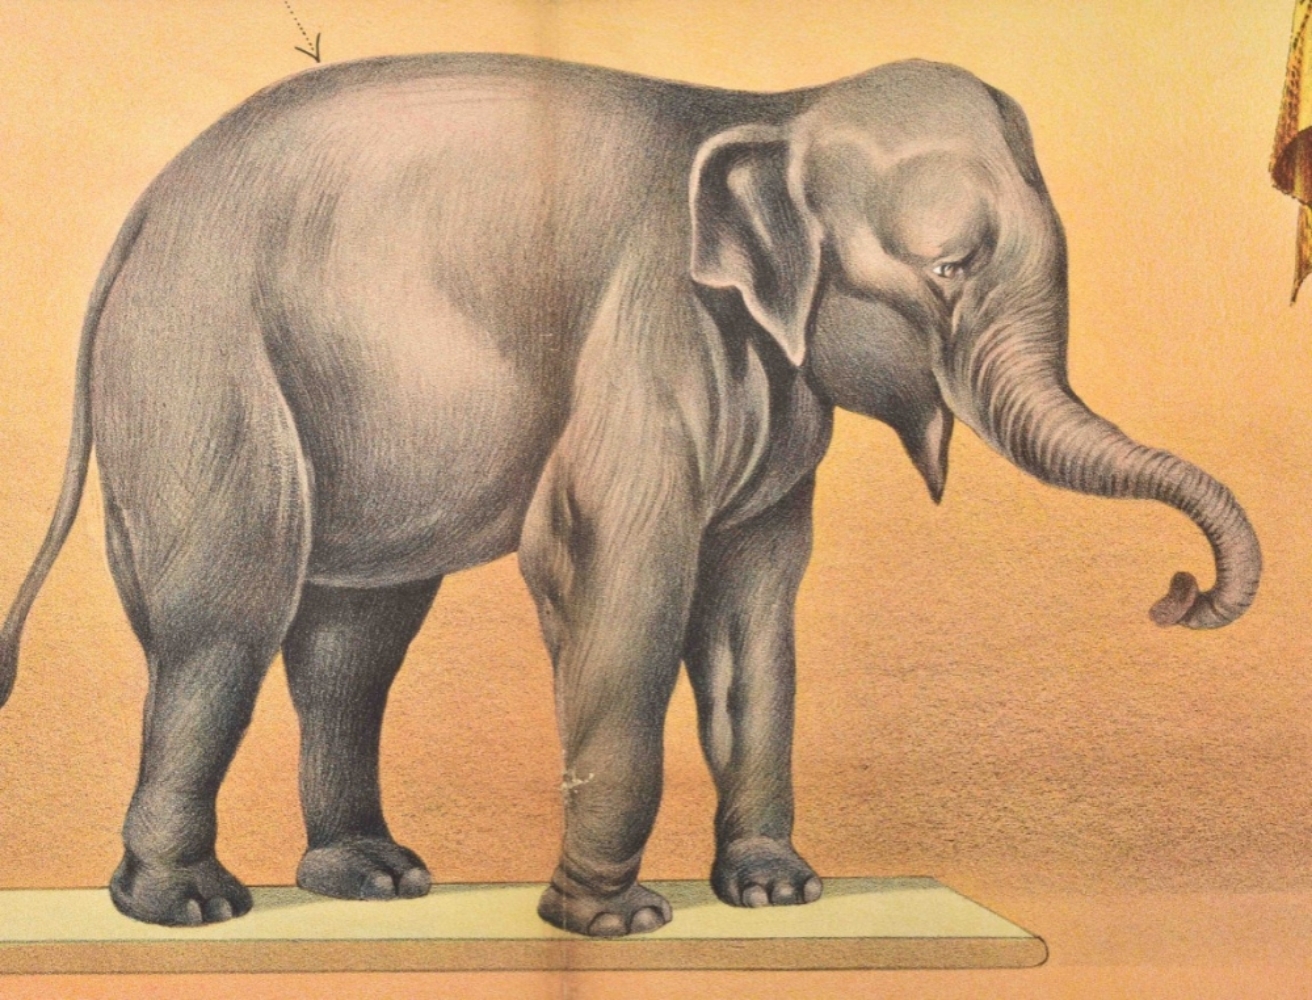 [Elephants] Eph. Thompson and his wonderful elephant Mary - Image 7 of 8